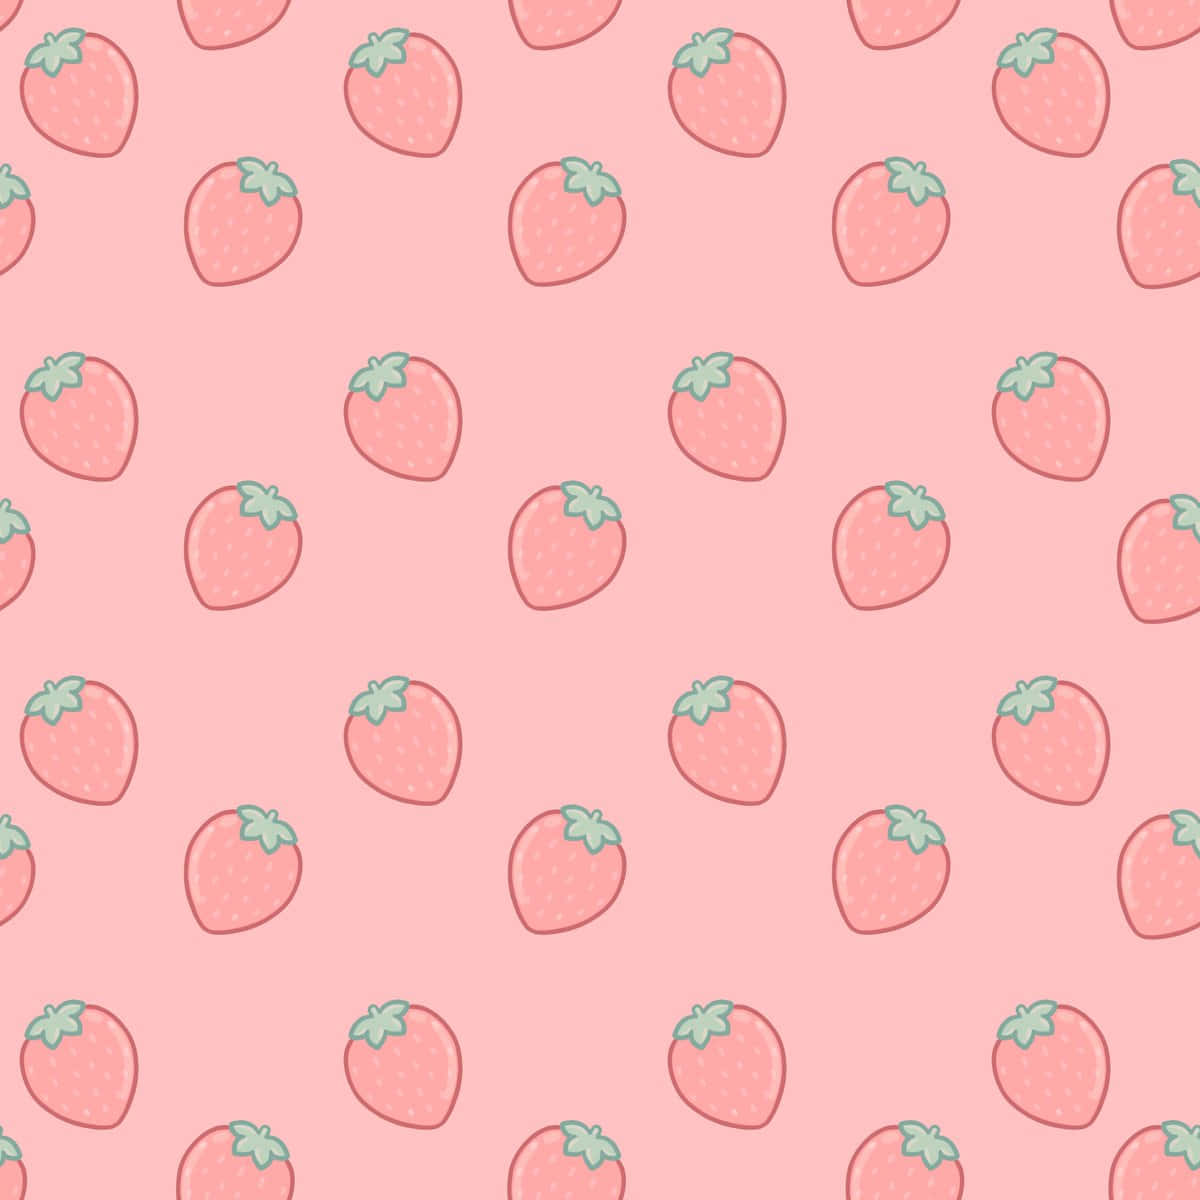 En dejlig moden pastellig jordbær i al sin herlighed. Wallpaper